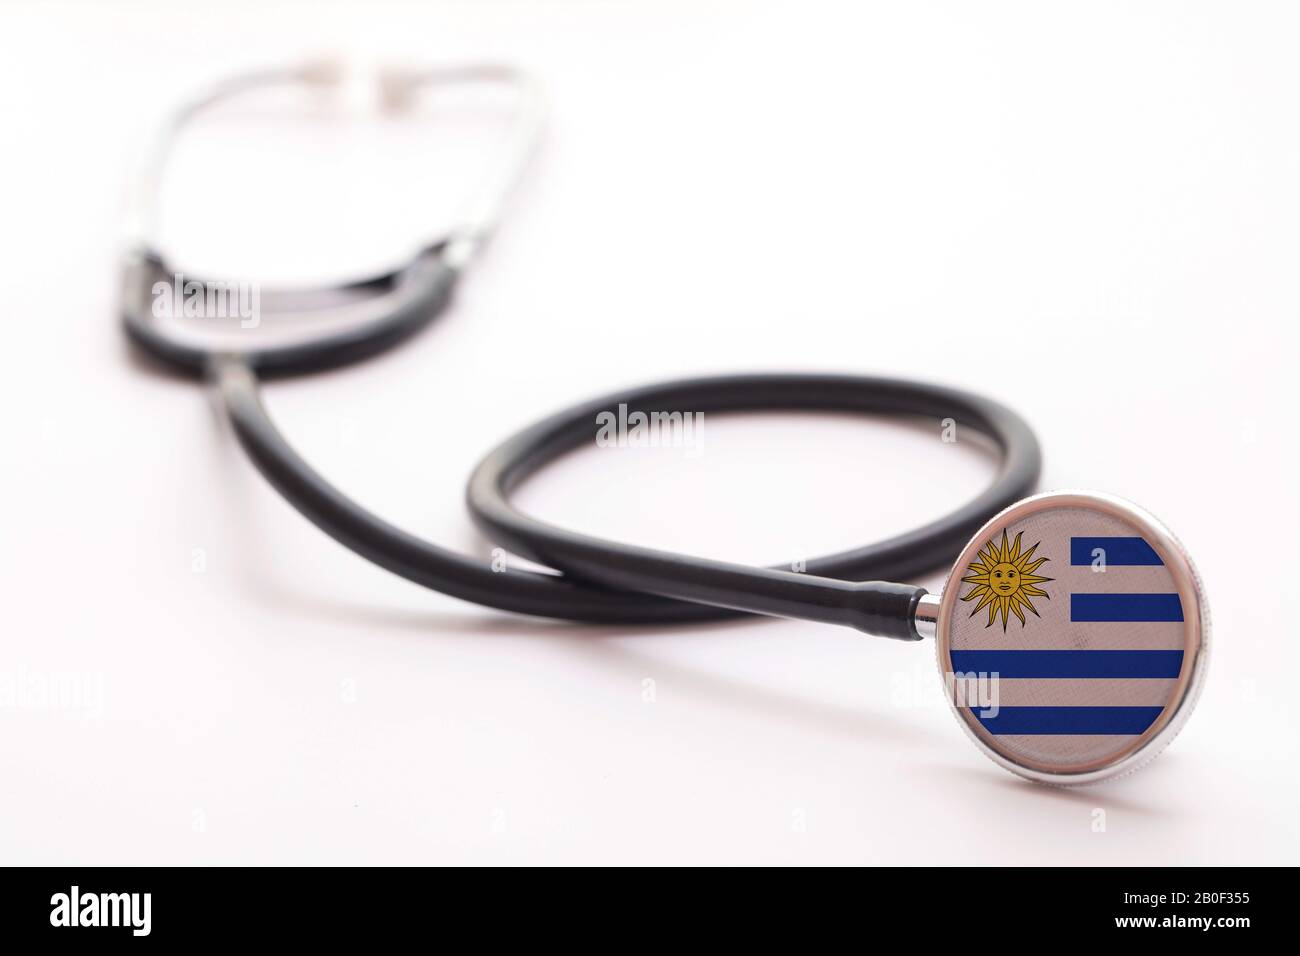 Concetto di assistenza sanitaria in Uruguay. Stetoscopio medico con bandiera del paese Foto Stock